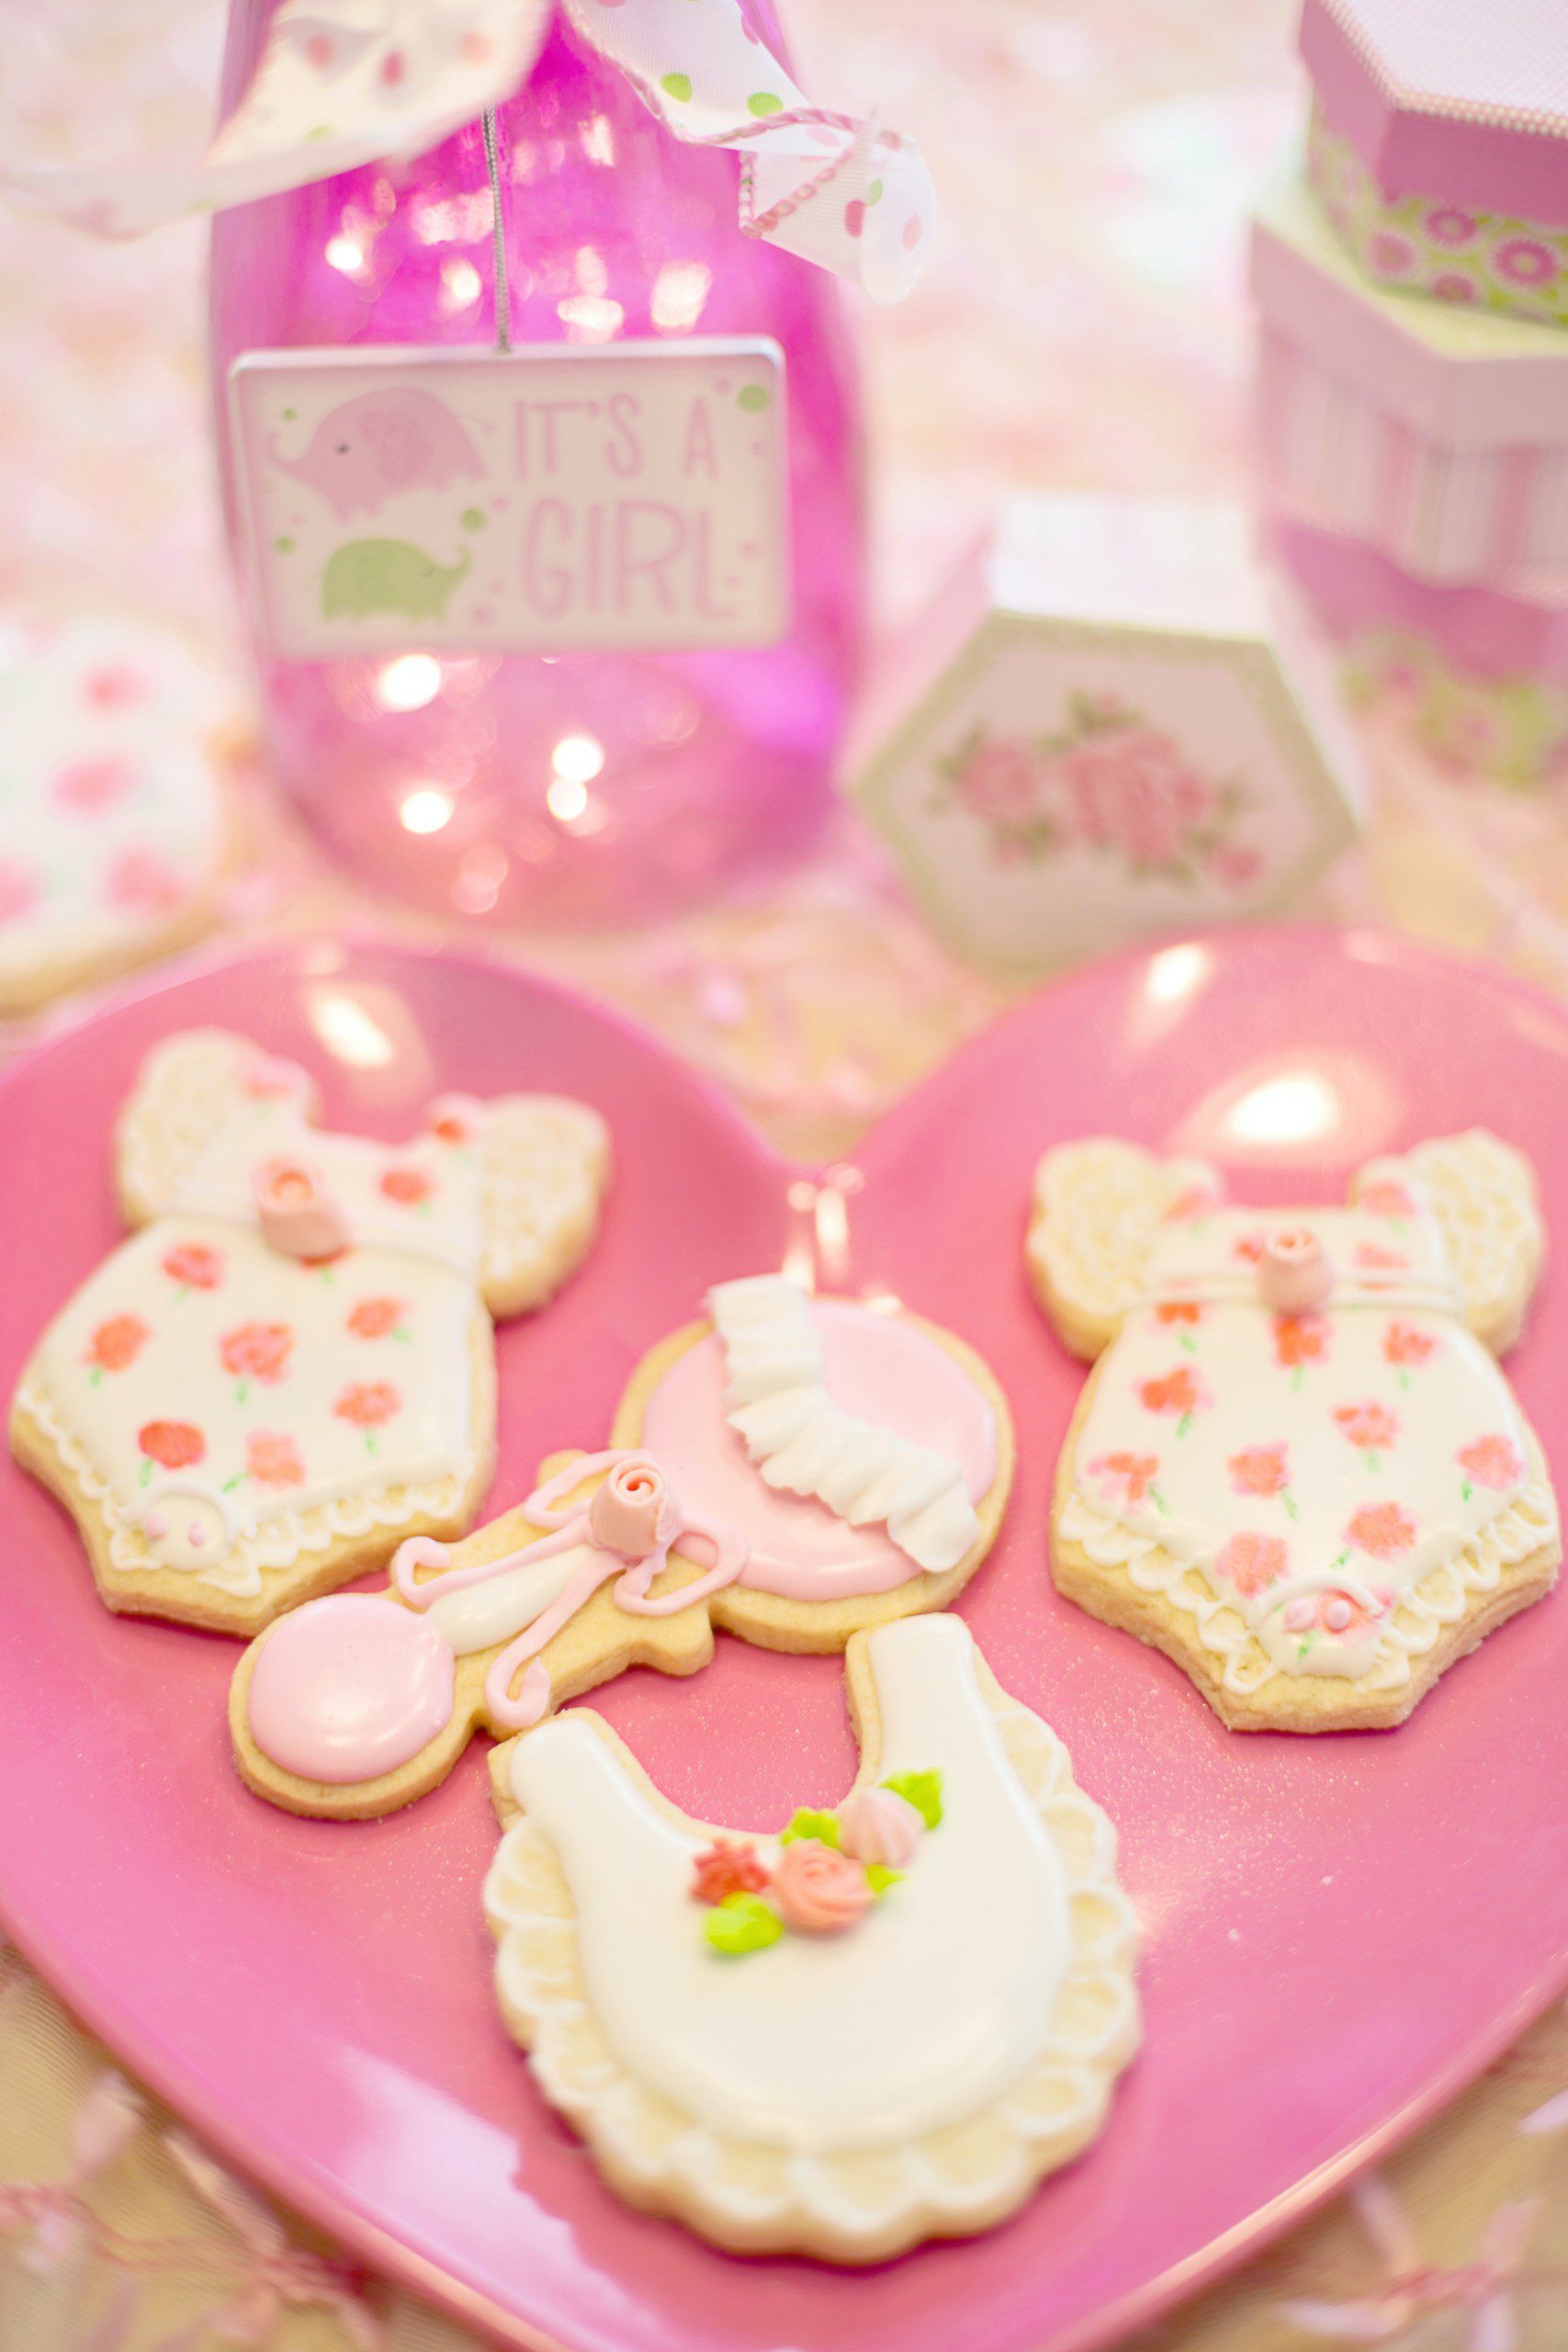 Imagem de biscoitos decorados para lembrancinha de um chá de fraldas.